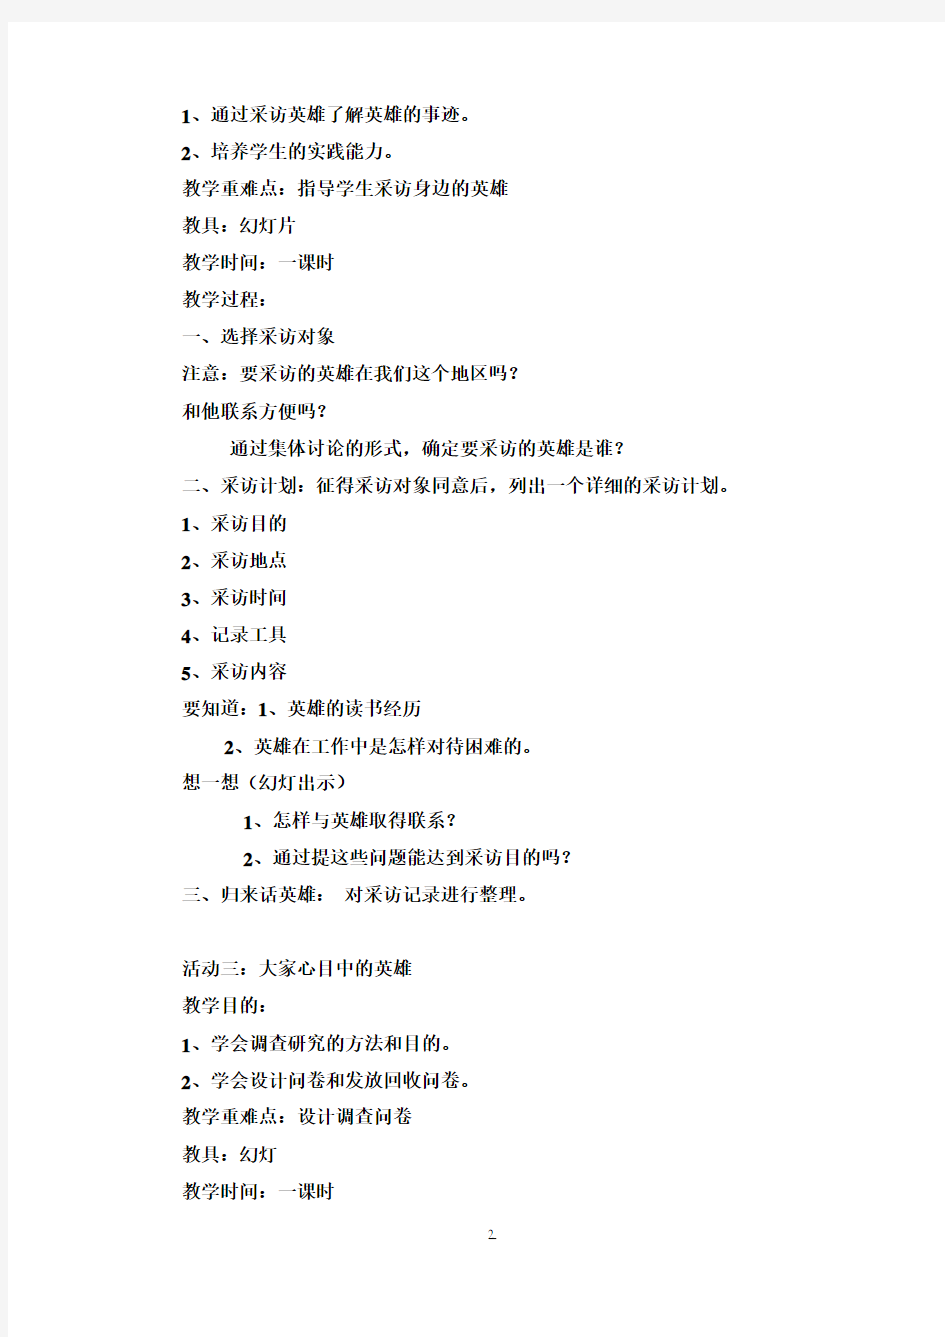 【完整打印版】小学五年级下册综合实践活动教案(上海科技教育出版社)1